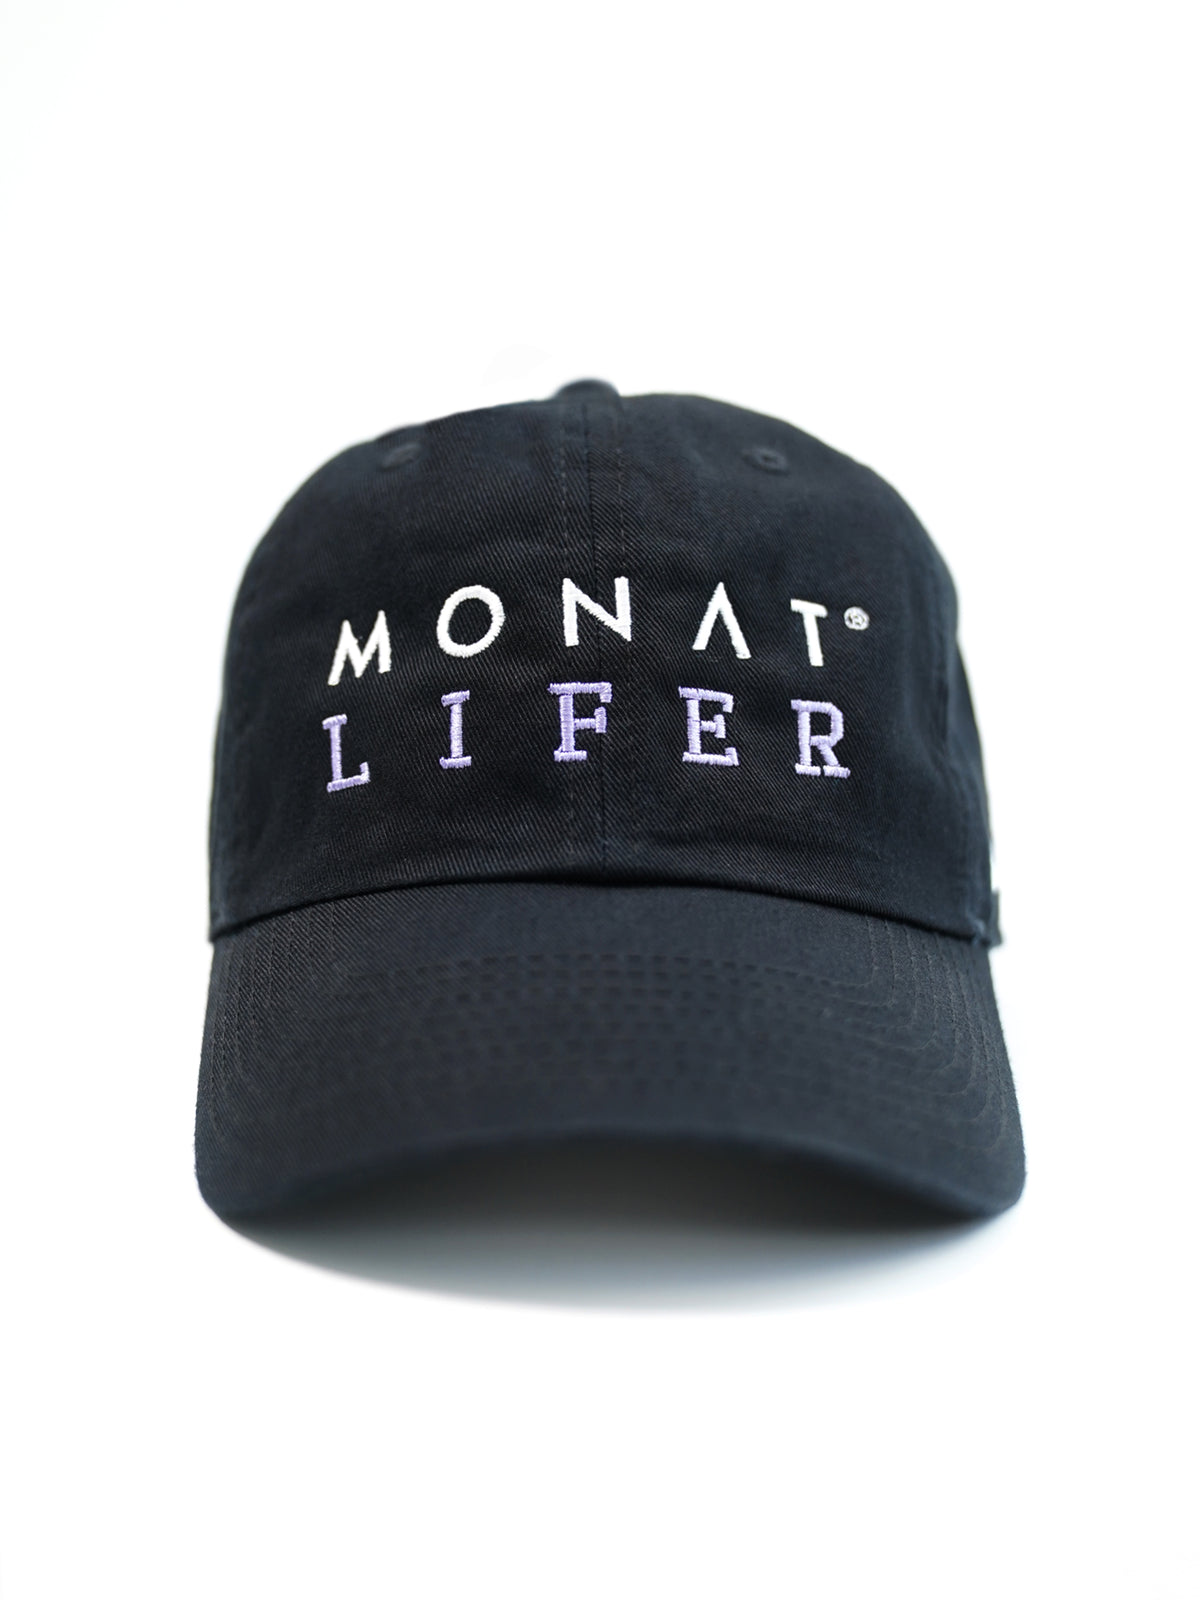 MONAT NIKE HAT - BLACK LIFER